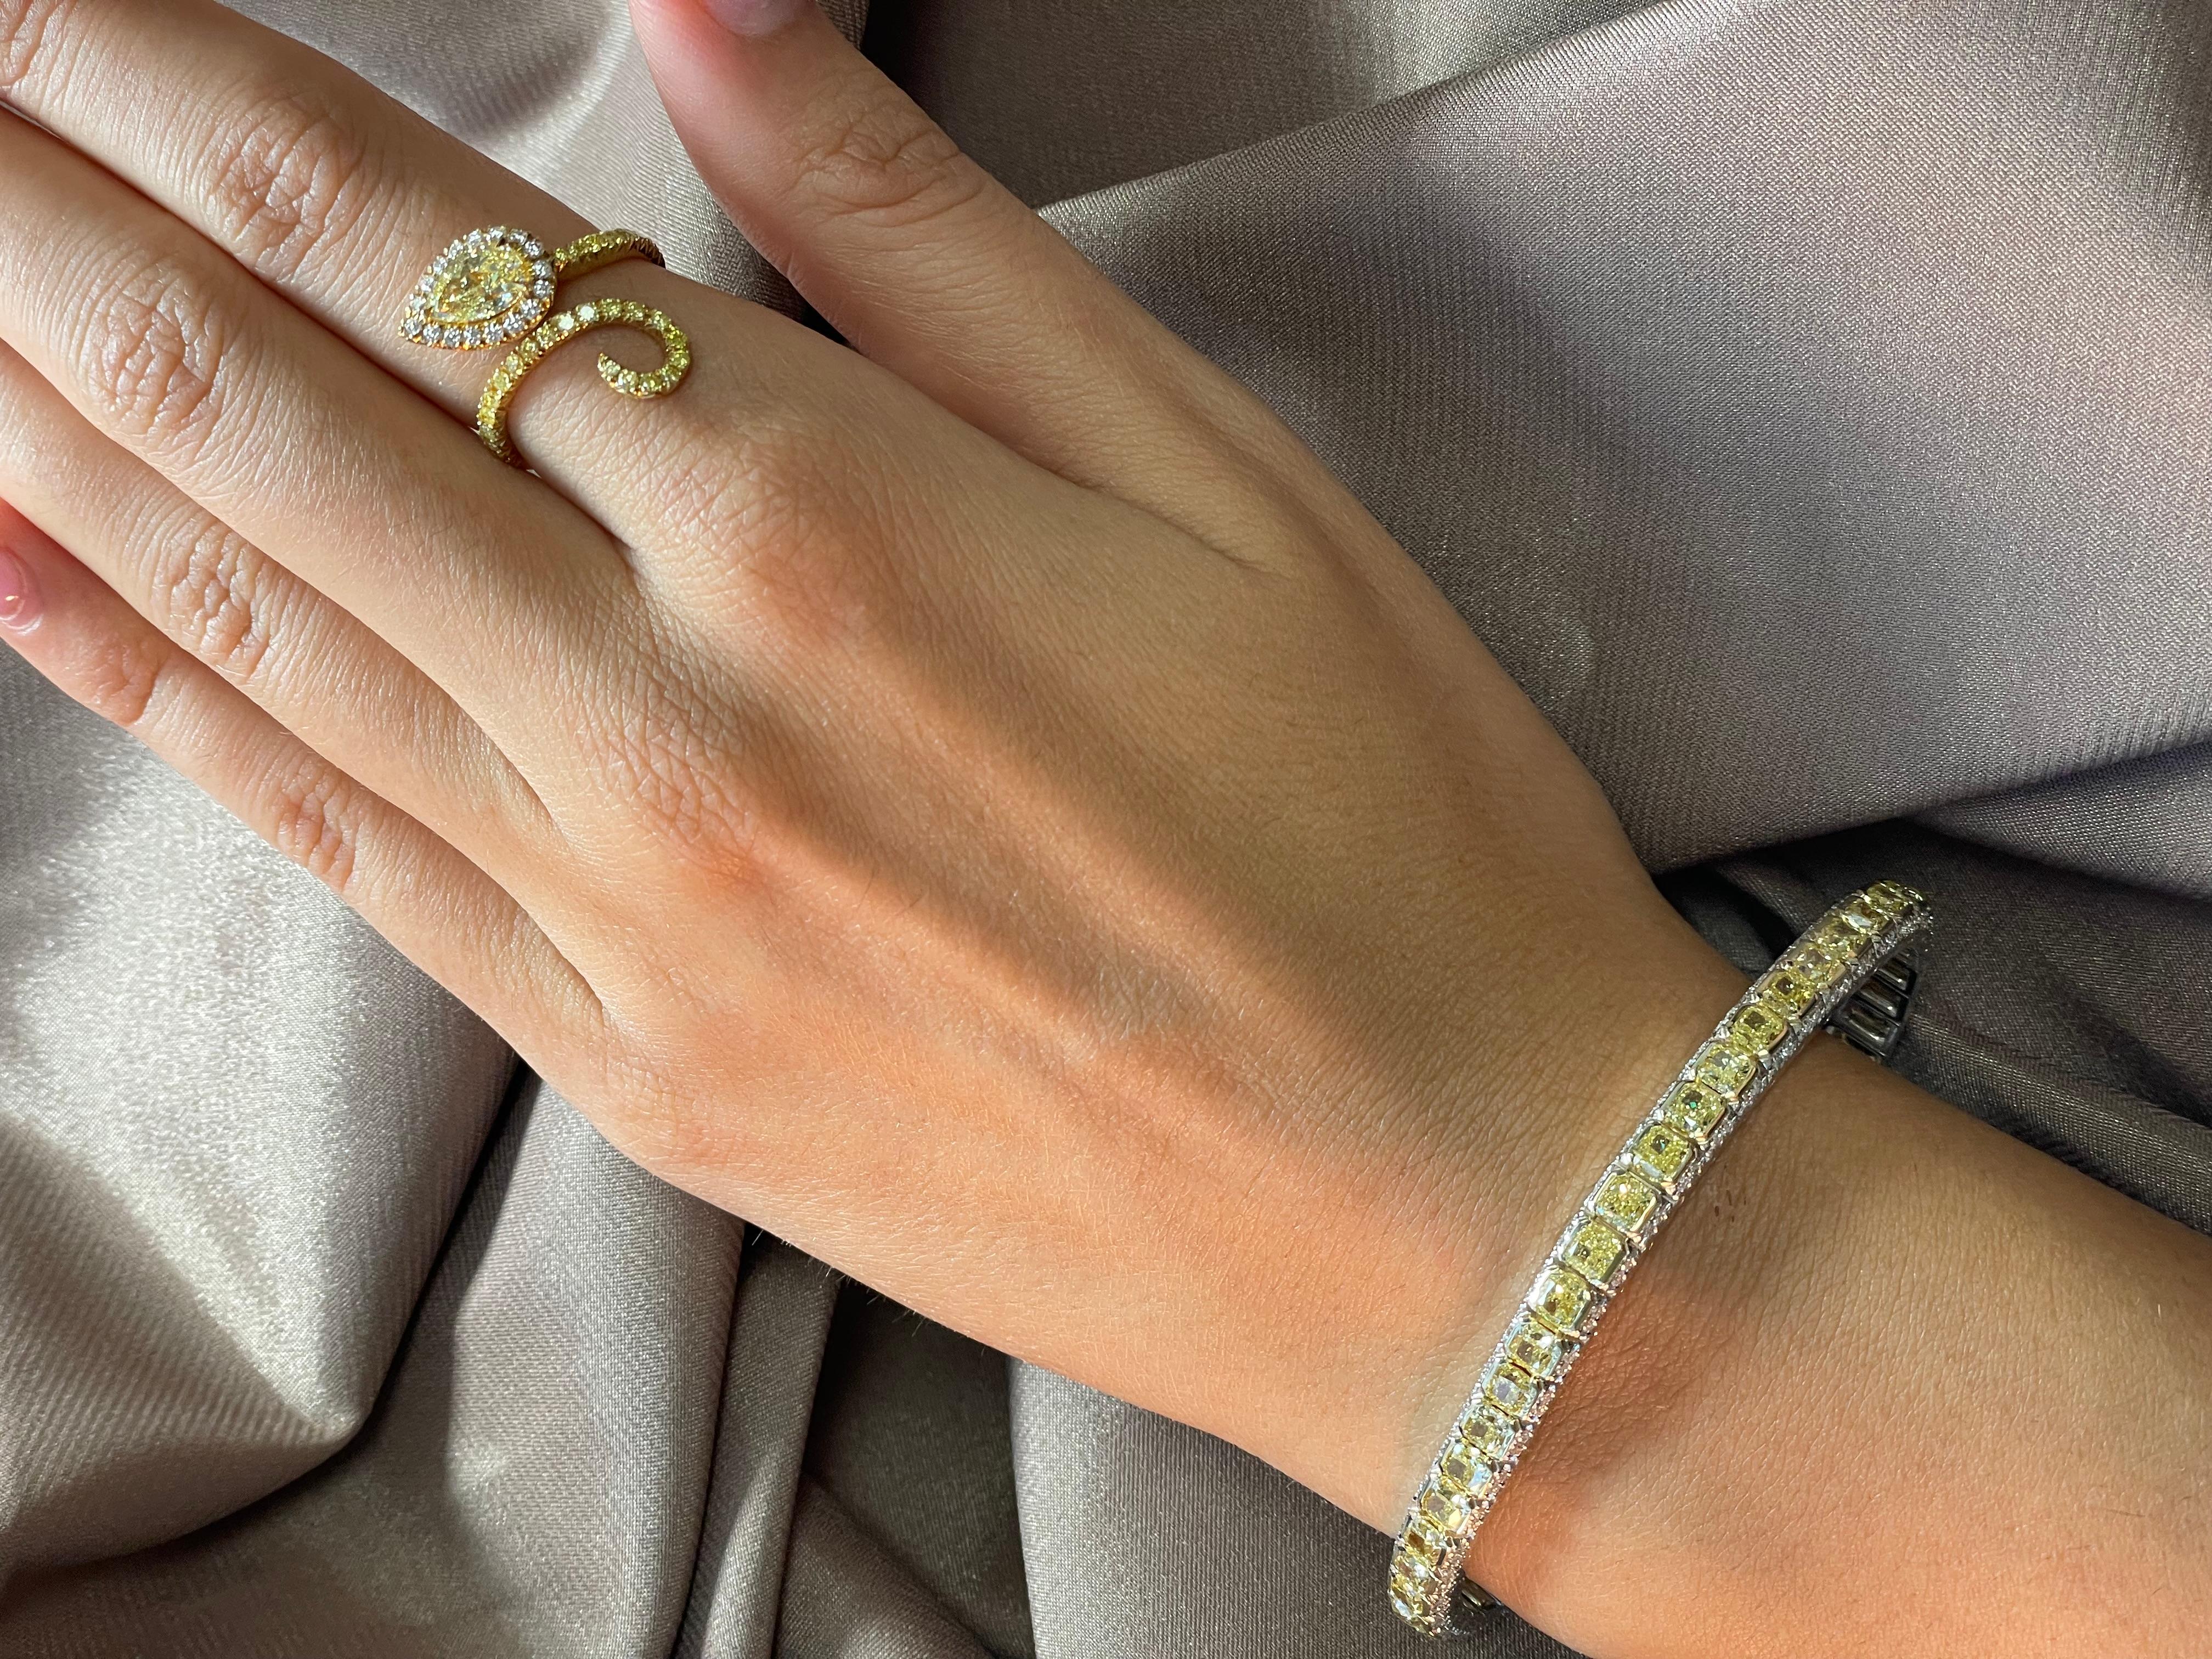 Voici un bracelet exquis en diamant jaune d'un poids total de 11,77 carats, un véritable chef-d'œuvre. Ce superbe bracelet est réalisé de manière experte en or blanc et jaune 18 carats et met en valeur 46 diamants jaunes taille coussin